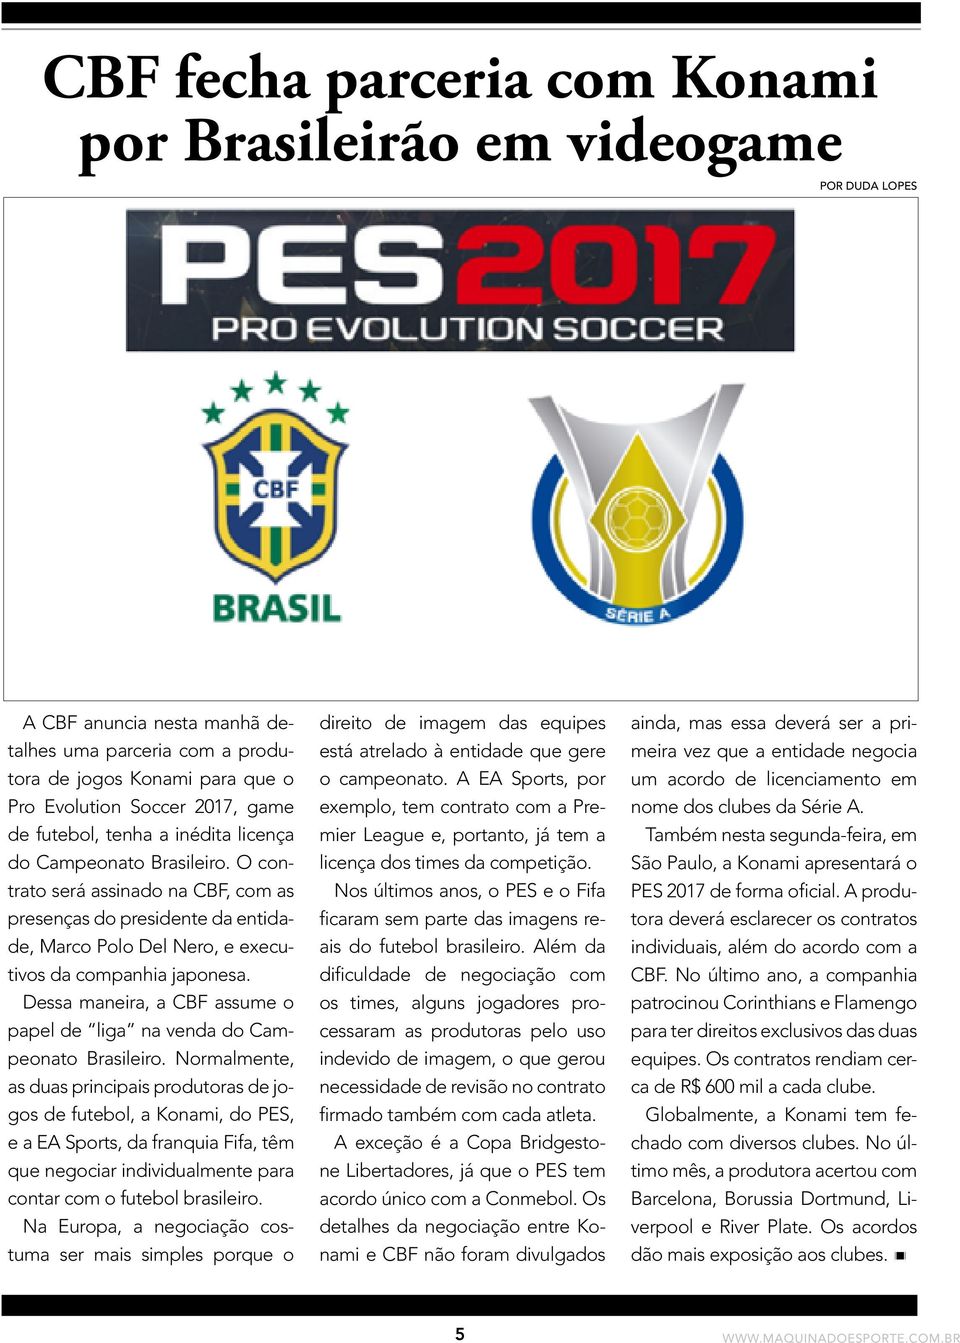 Dessa maneira, a CBF assume o papel de liga na venda do Campeonato Brasileiro.